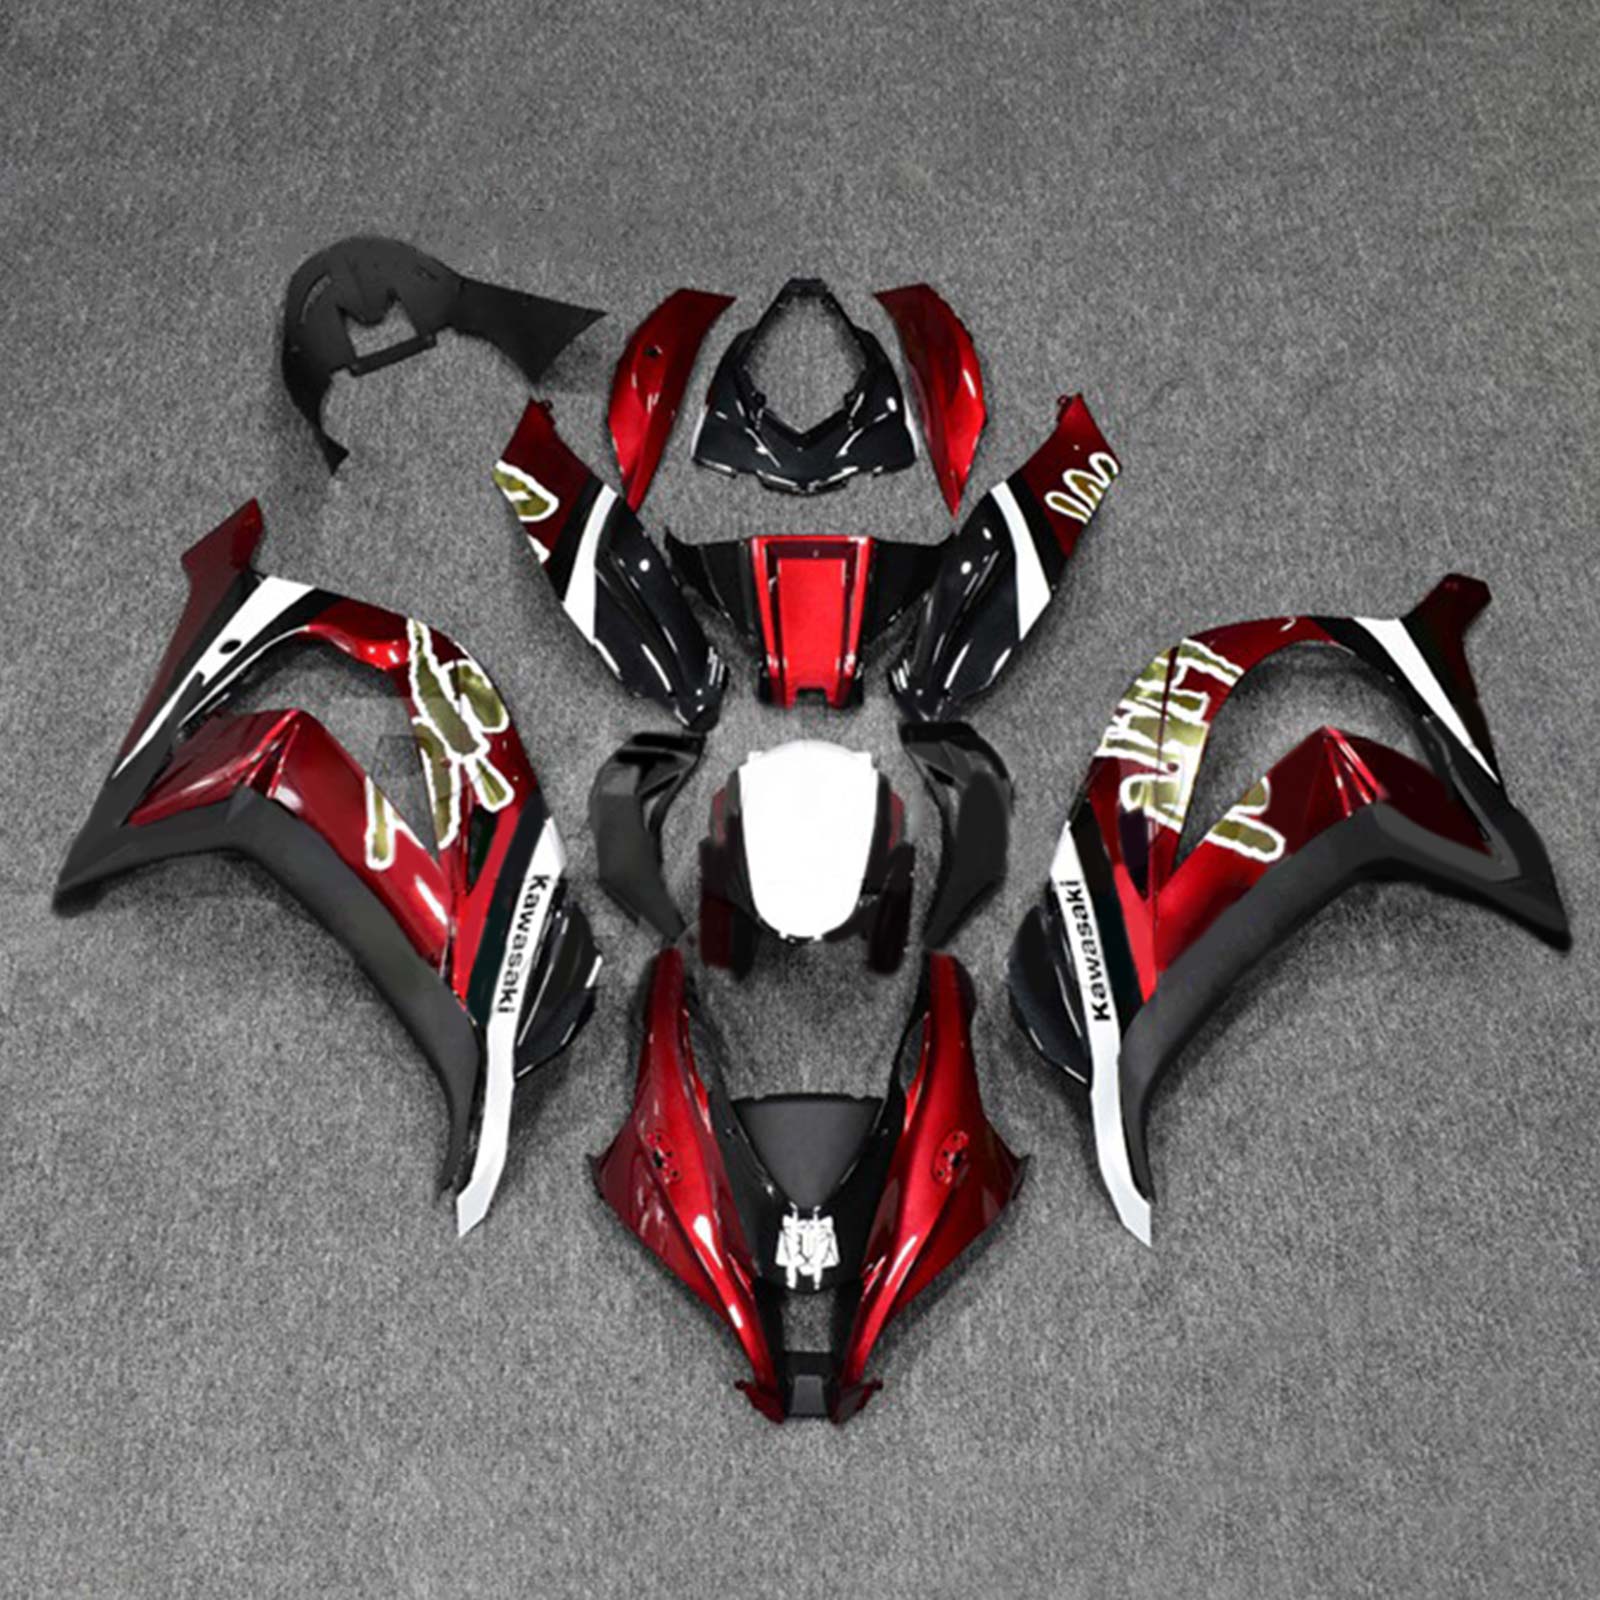 Kit carena Amotopart 2016-2020 ZX10R Kawasaki rosso e nero Style7